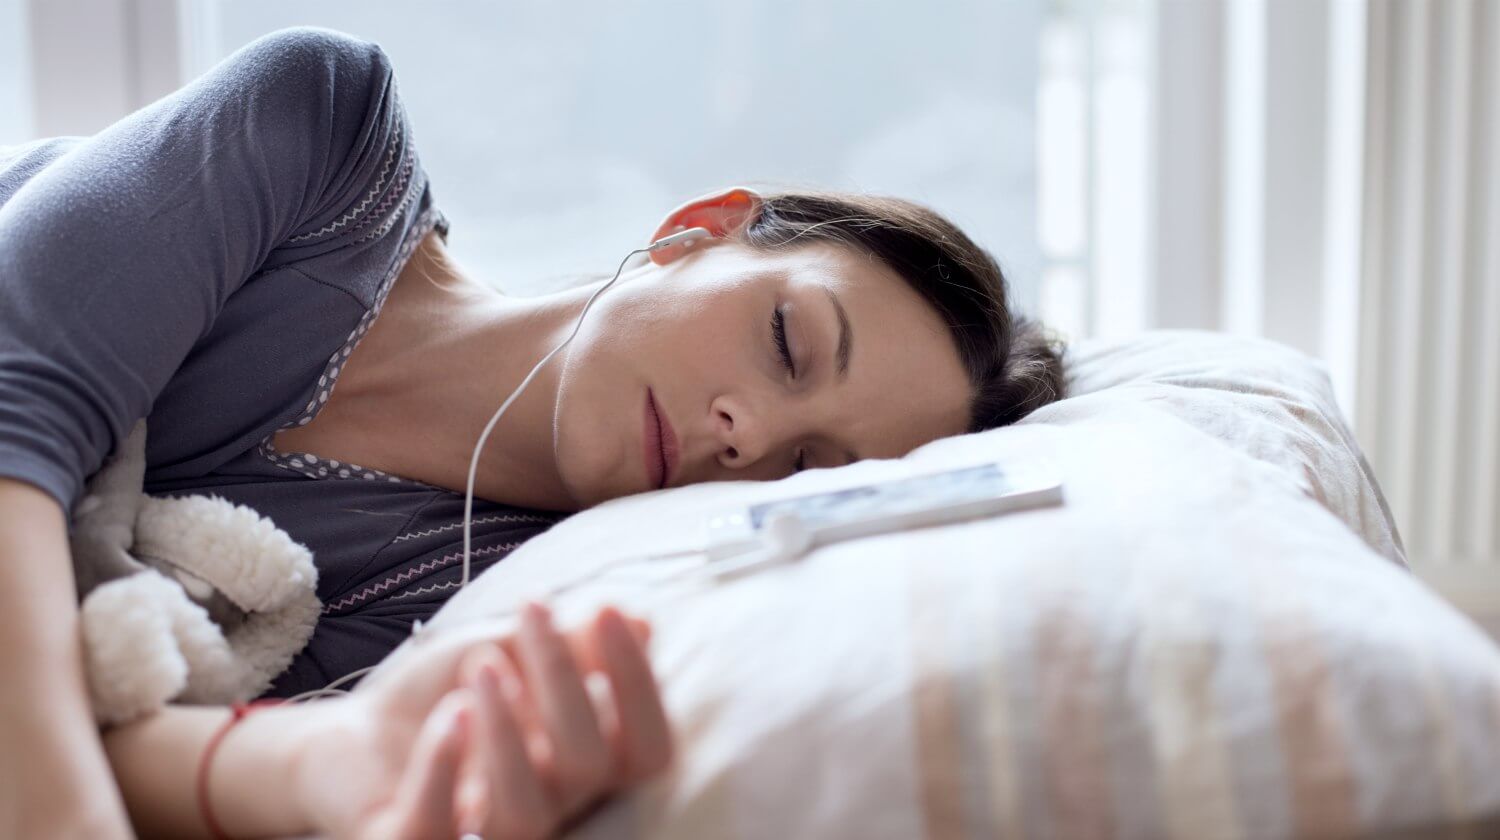 Âm nhạc có tác động tích cực đến giấc ngủ